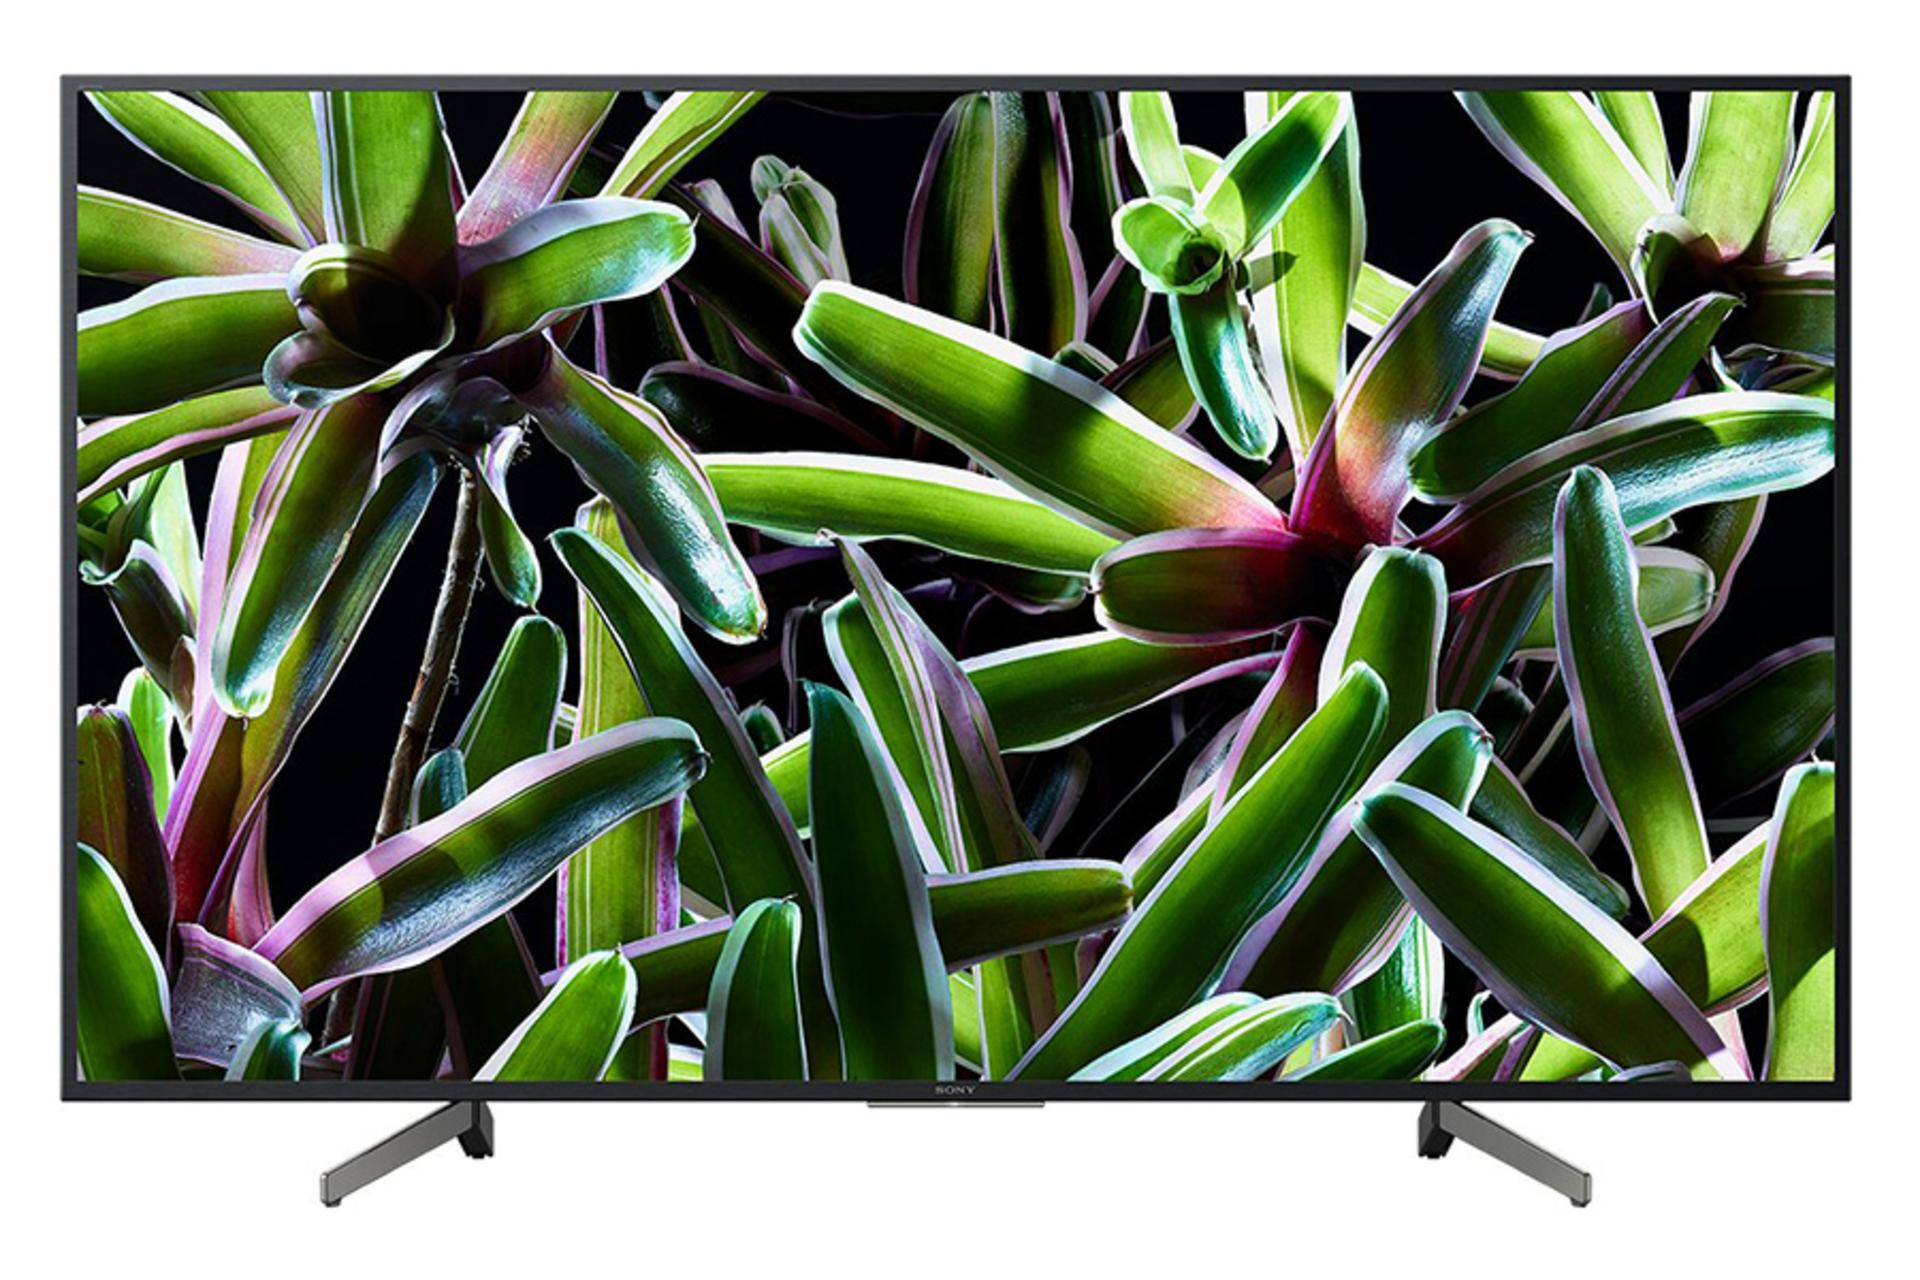 نمای جلو تلویزیون سونی X7000G مدل 49 اینچ با صفحه روشن